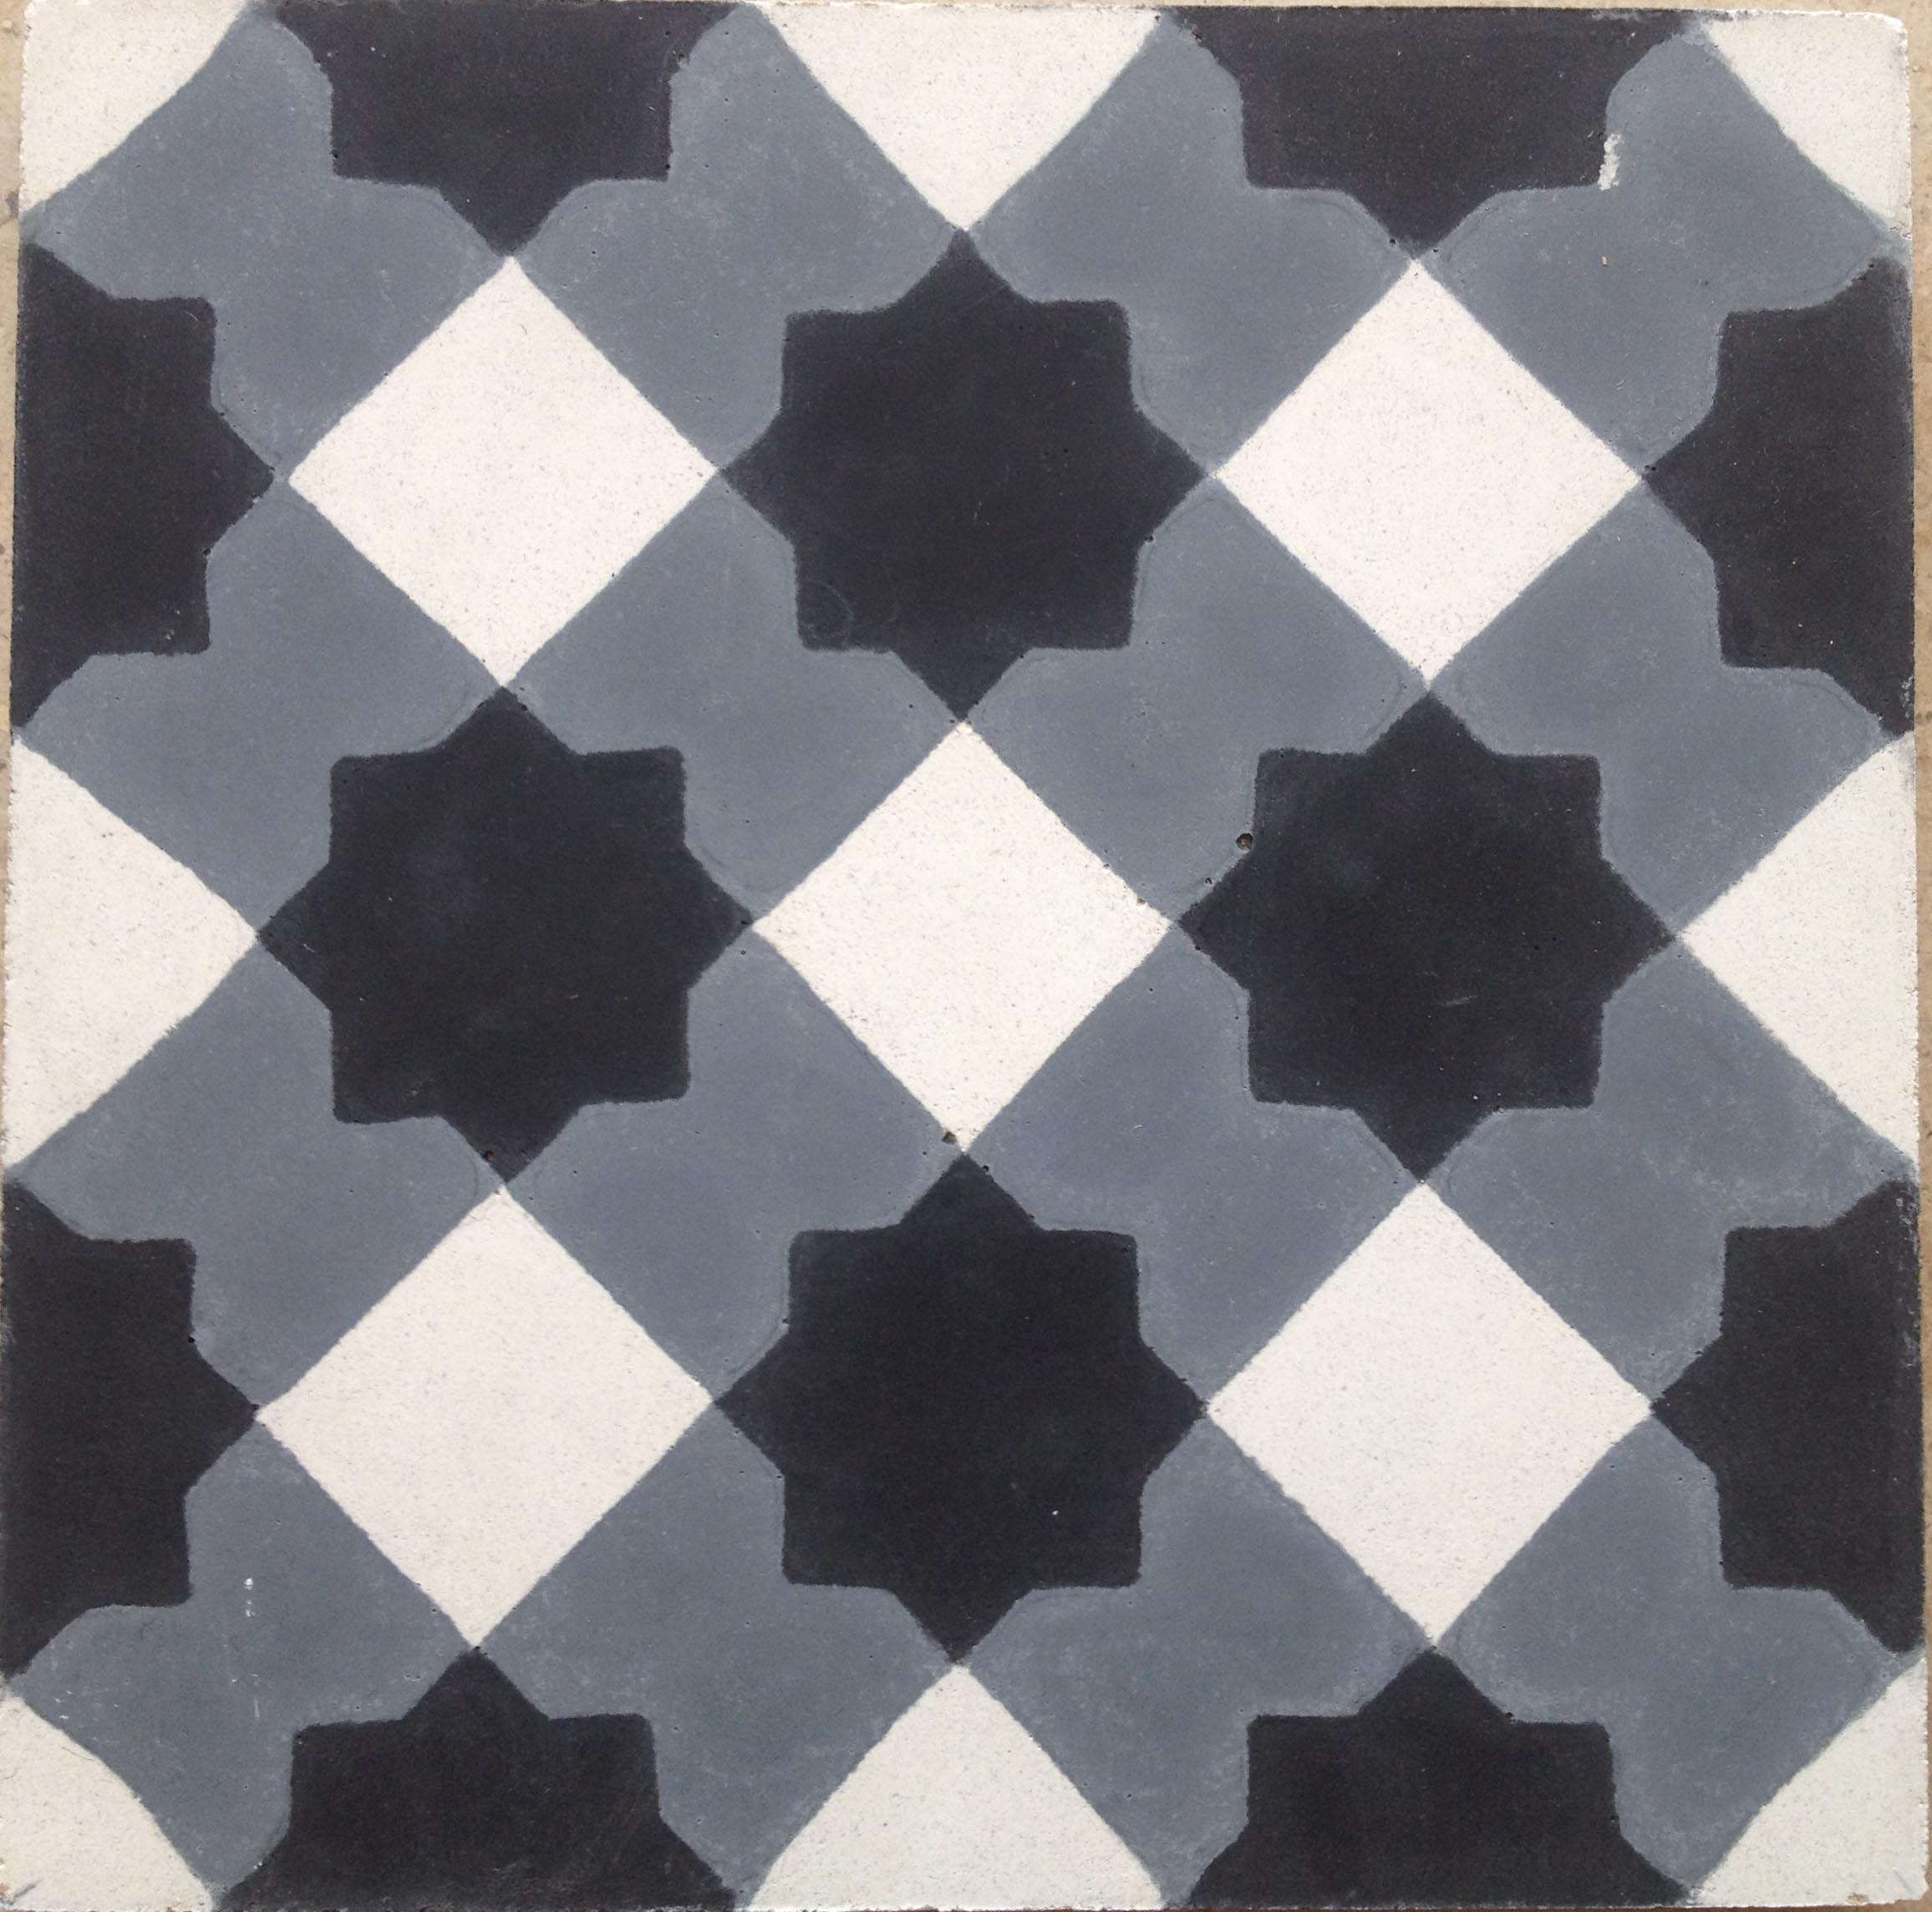 Marrakech Grey / Black Cement Tile